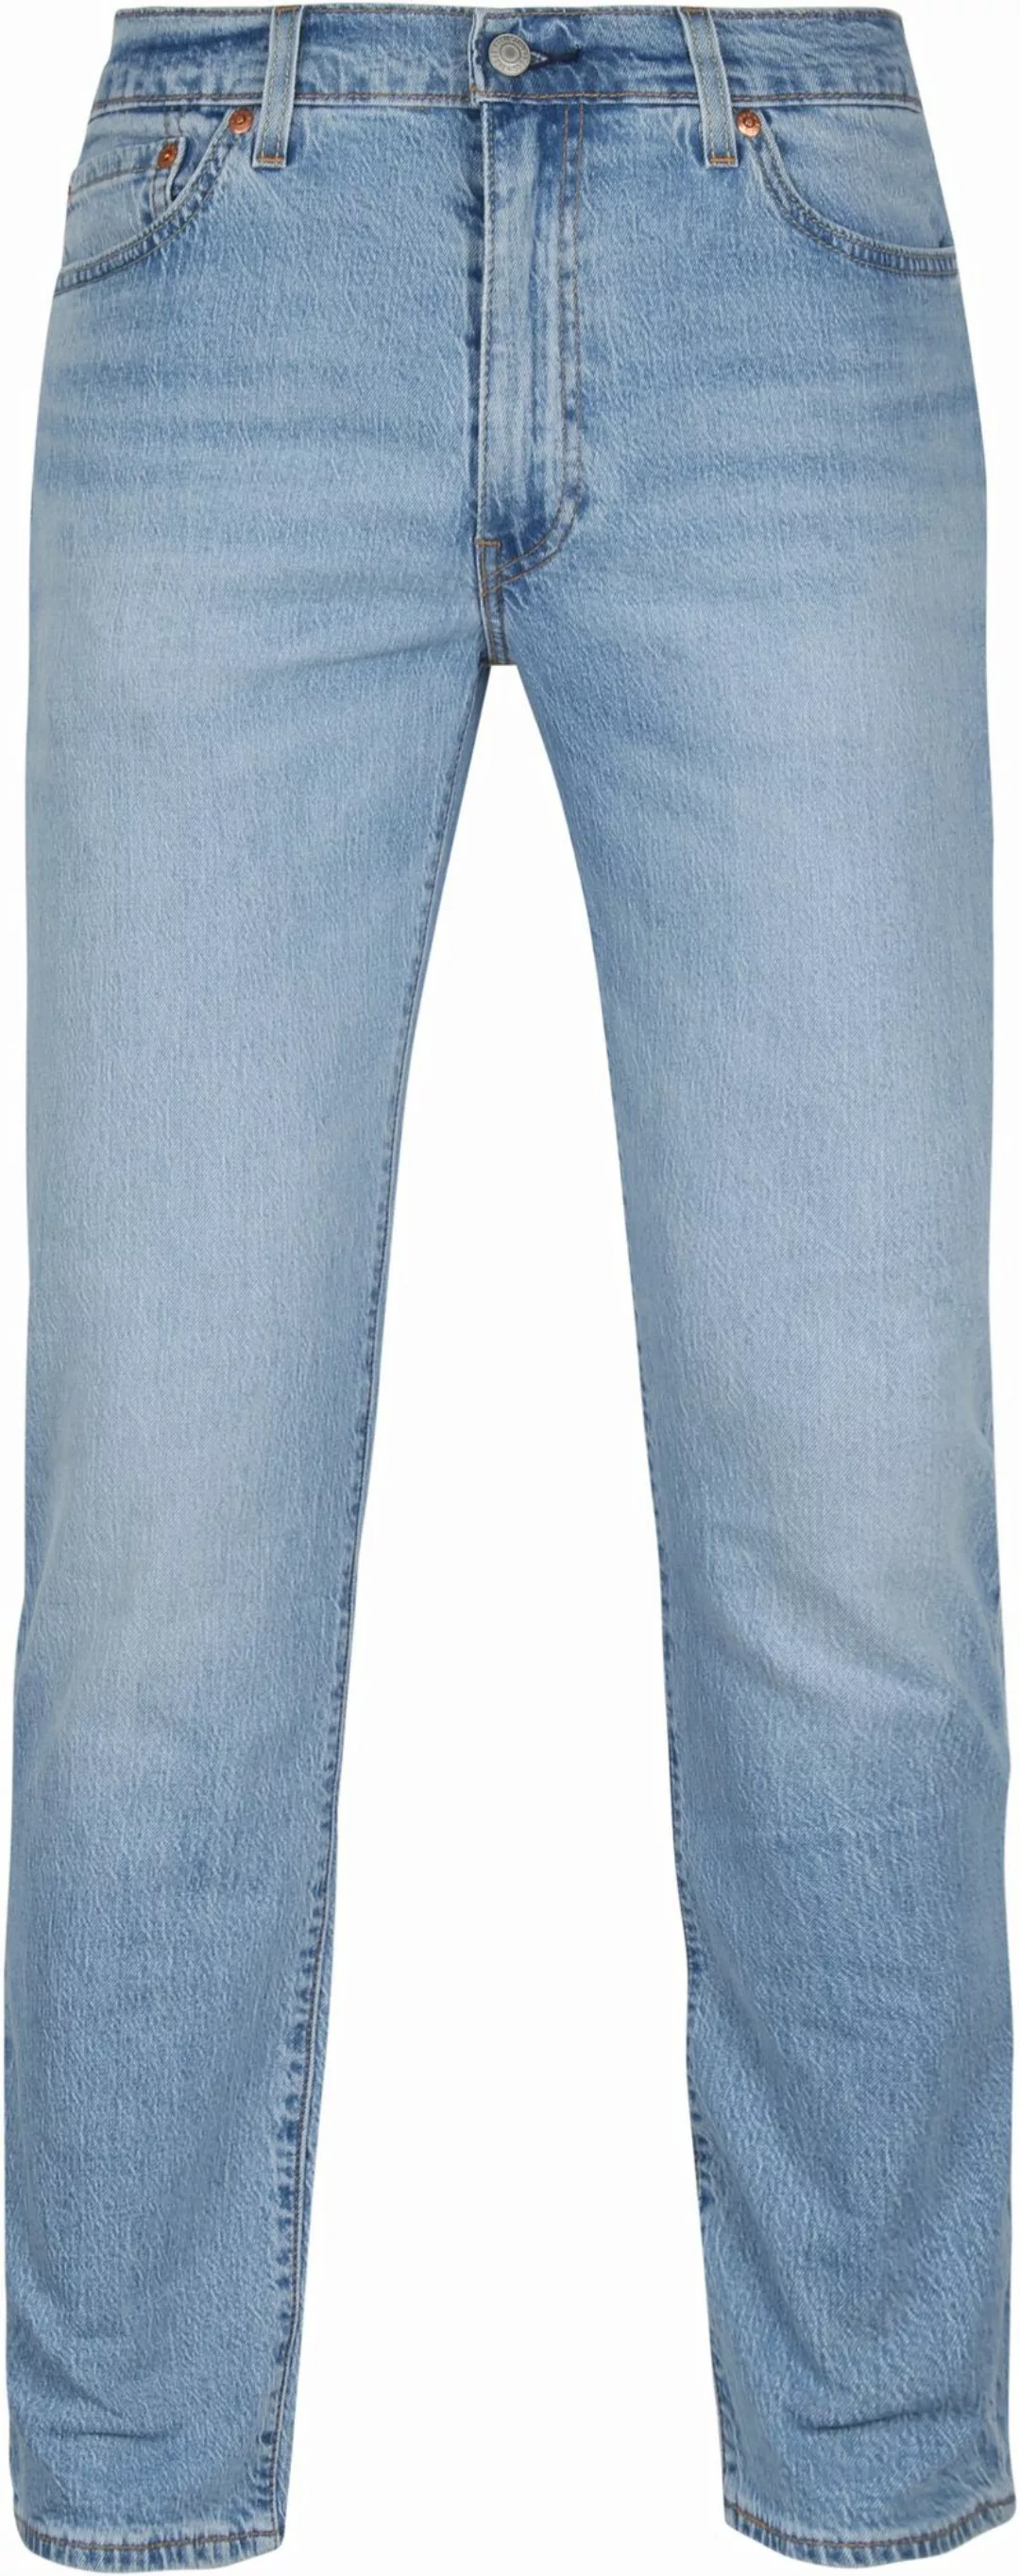 Levi's 511 Jeanshose Blau - Größe W 36 - L 34 günstig online kaufen